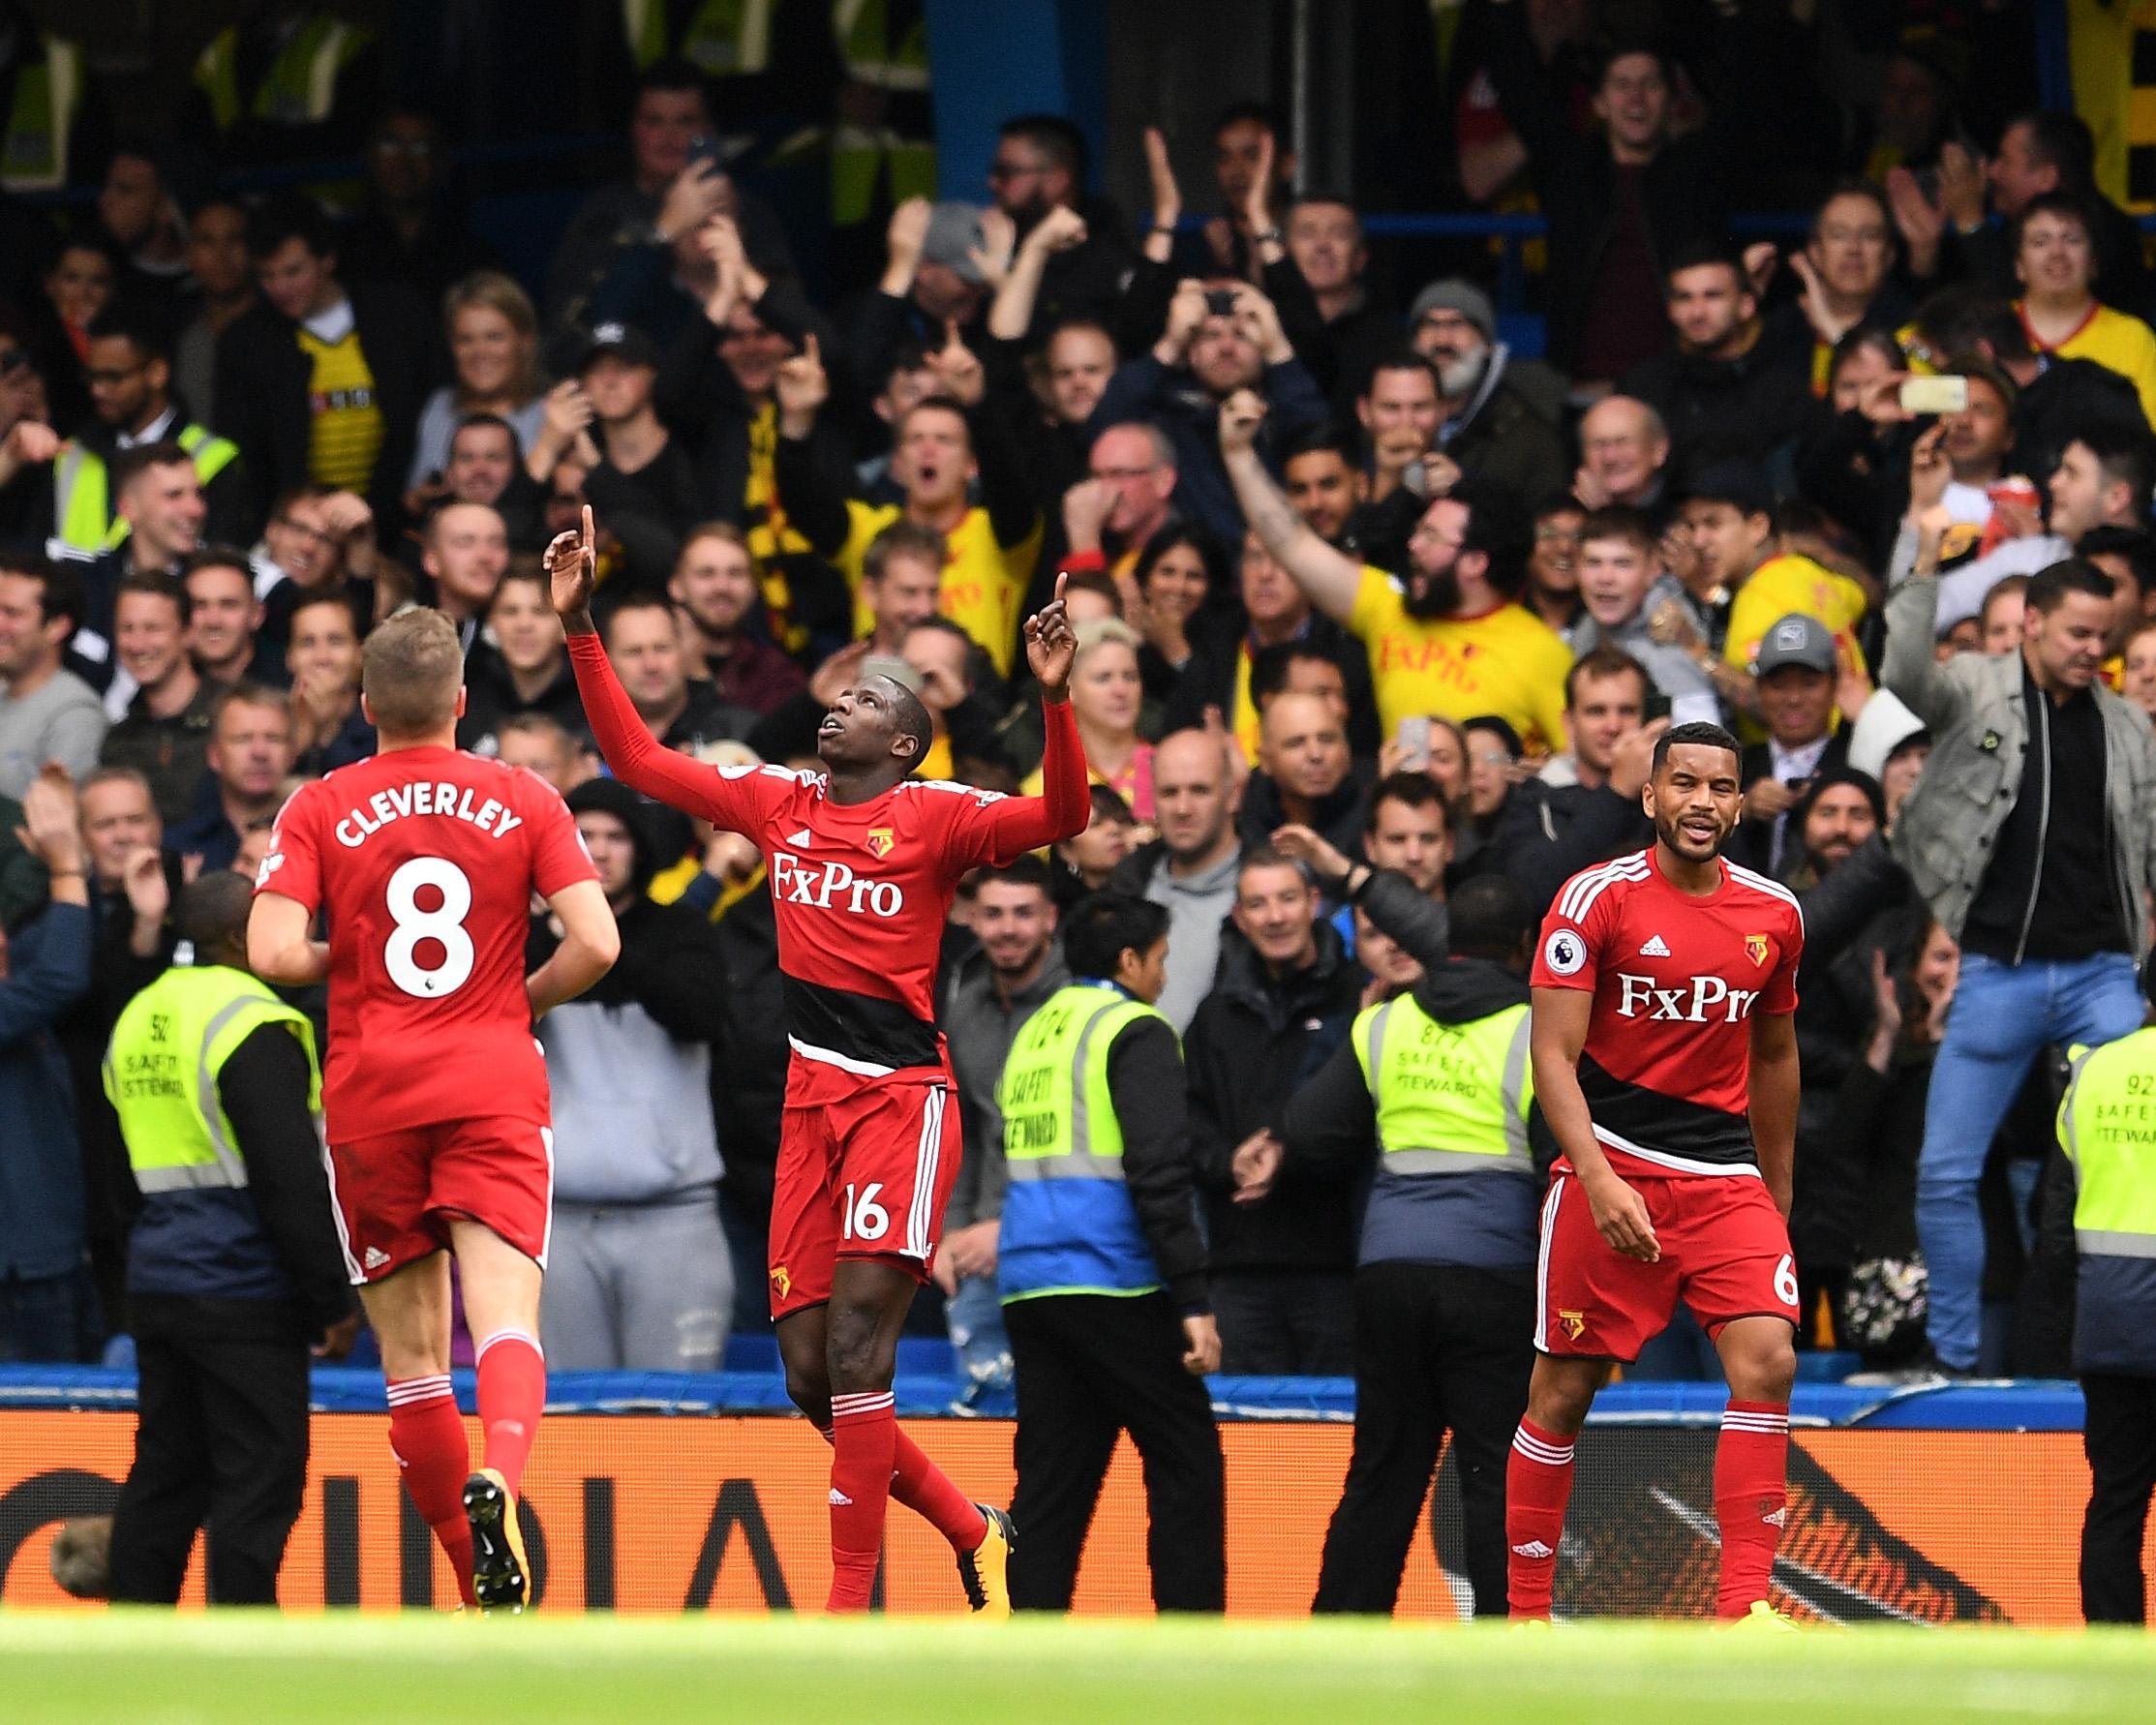 Chelsea beat Watford 4-3 in their last encounter